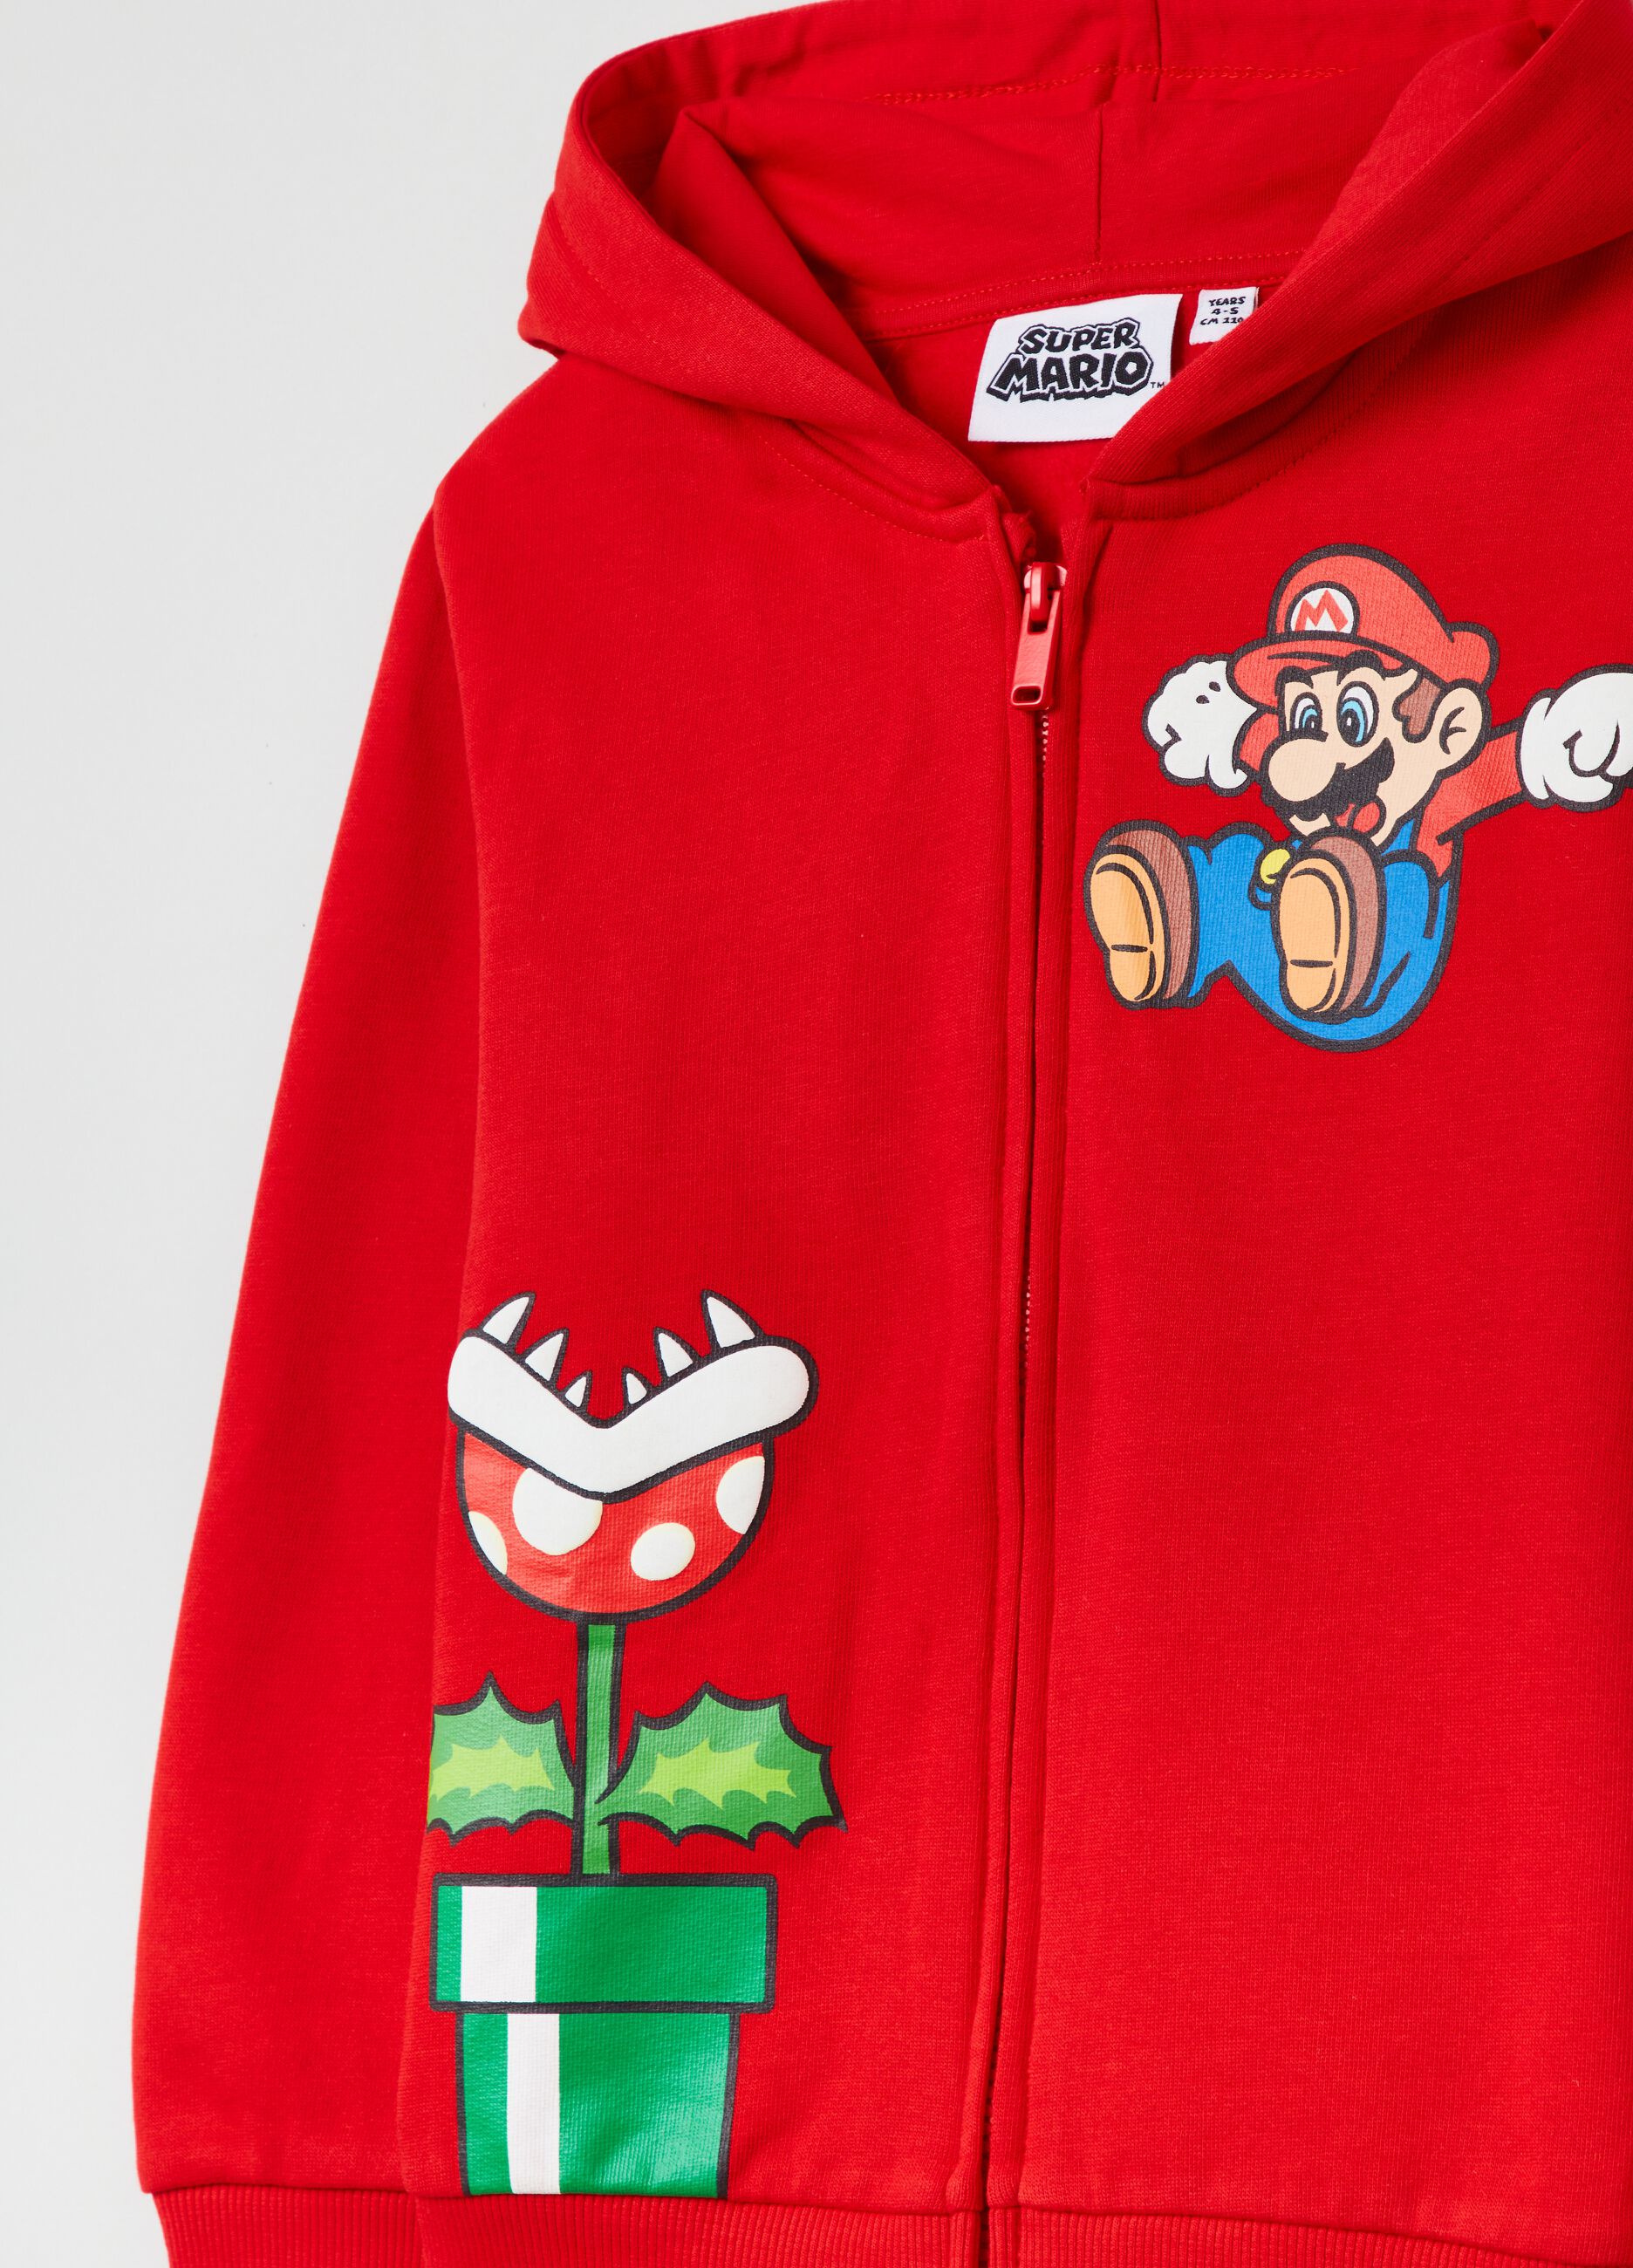 Full-zip hoodie with Super Mario print